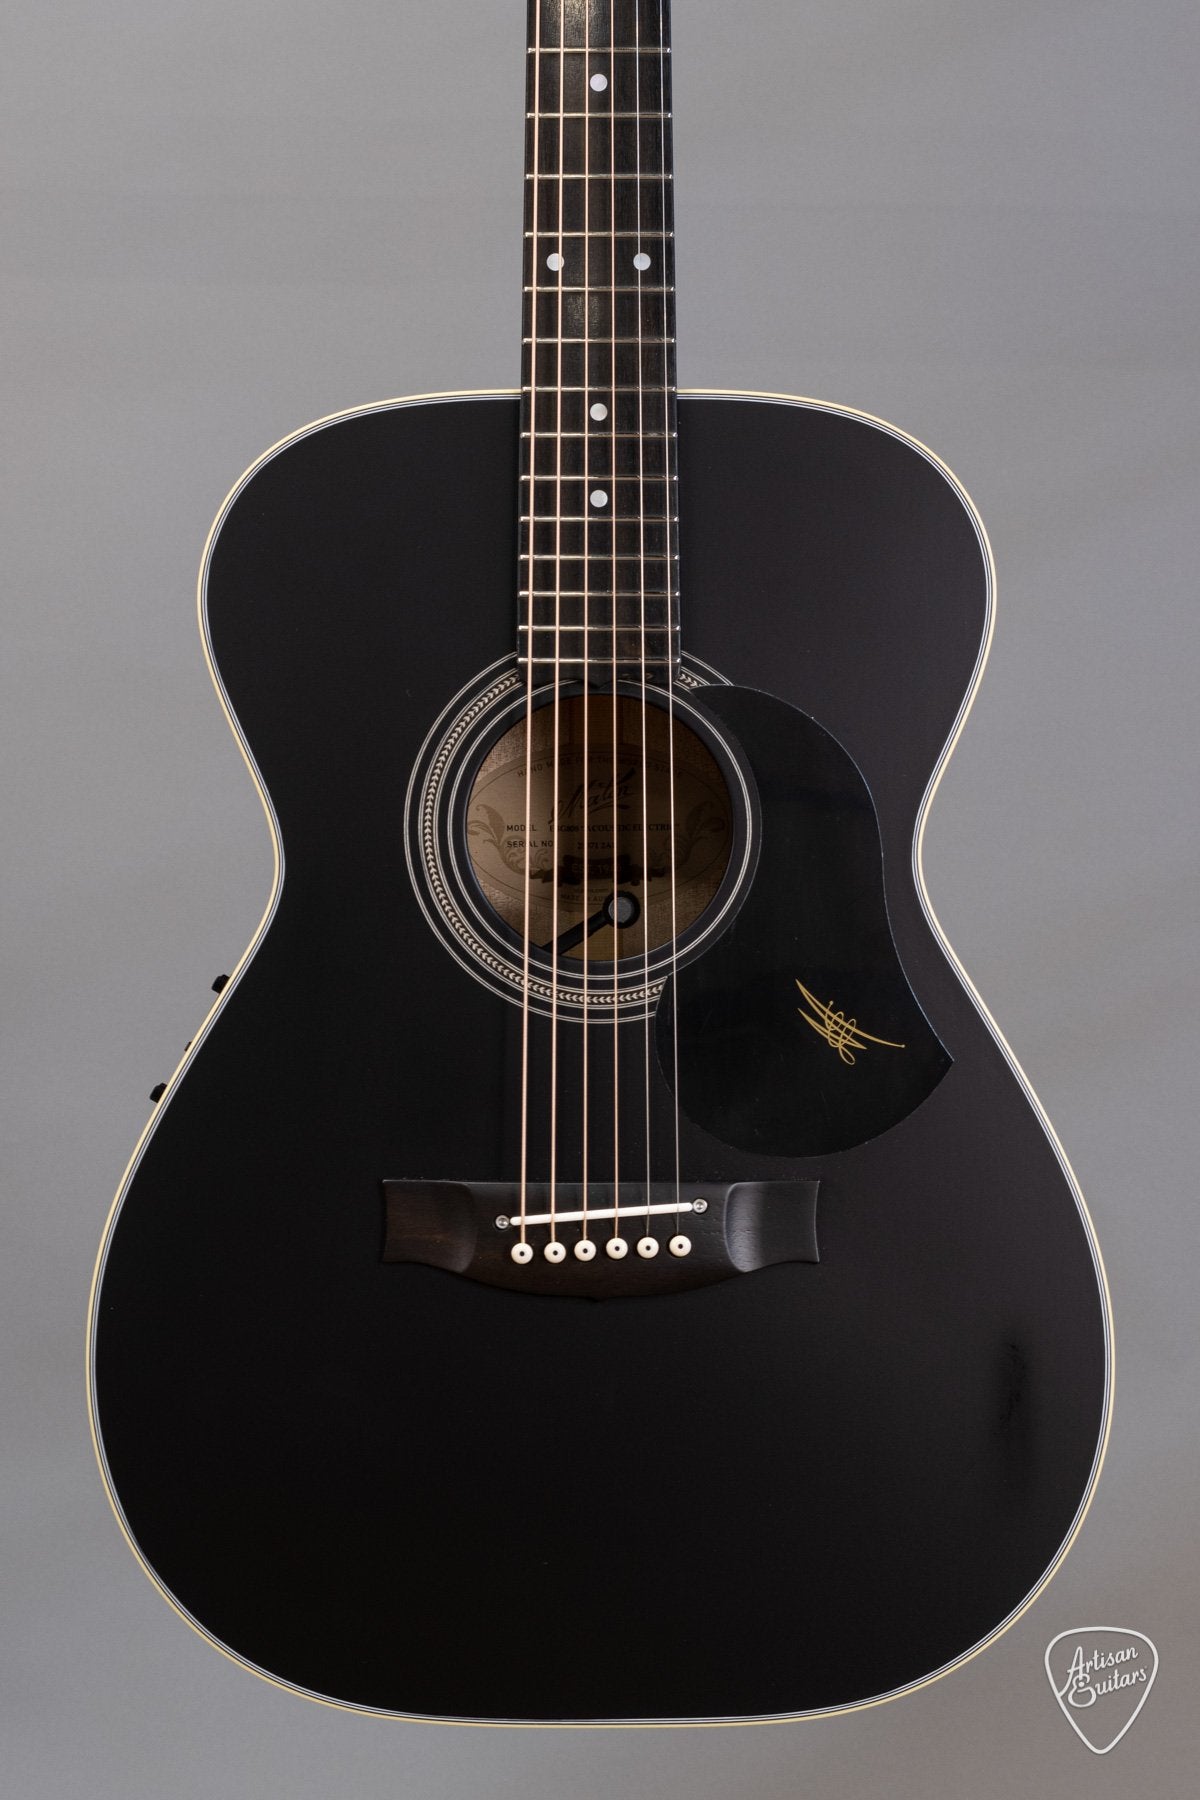 Maton Guitars EBG808 - Custom Jet Black Satin Nitro Finish - 15078 - Artisan Guitars